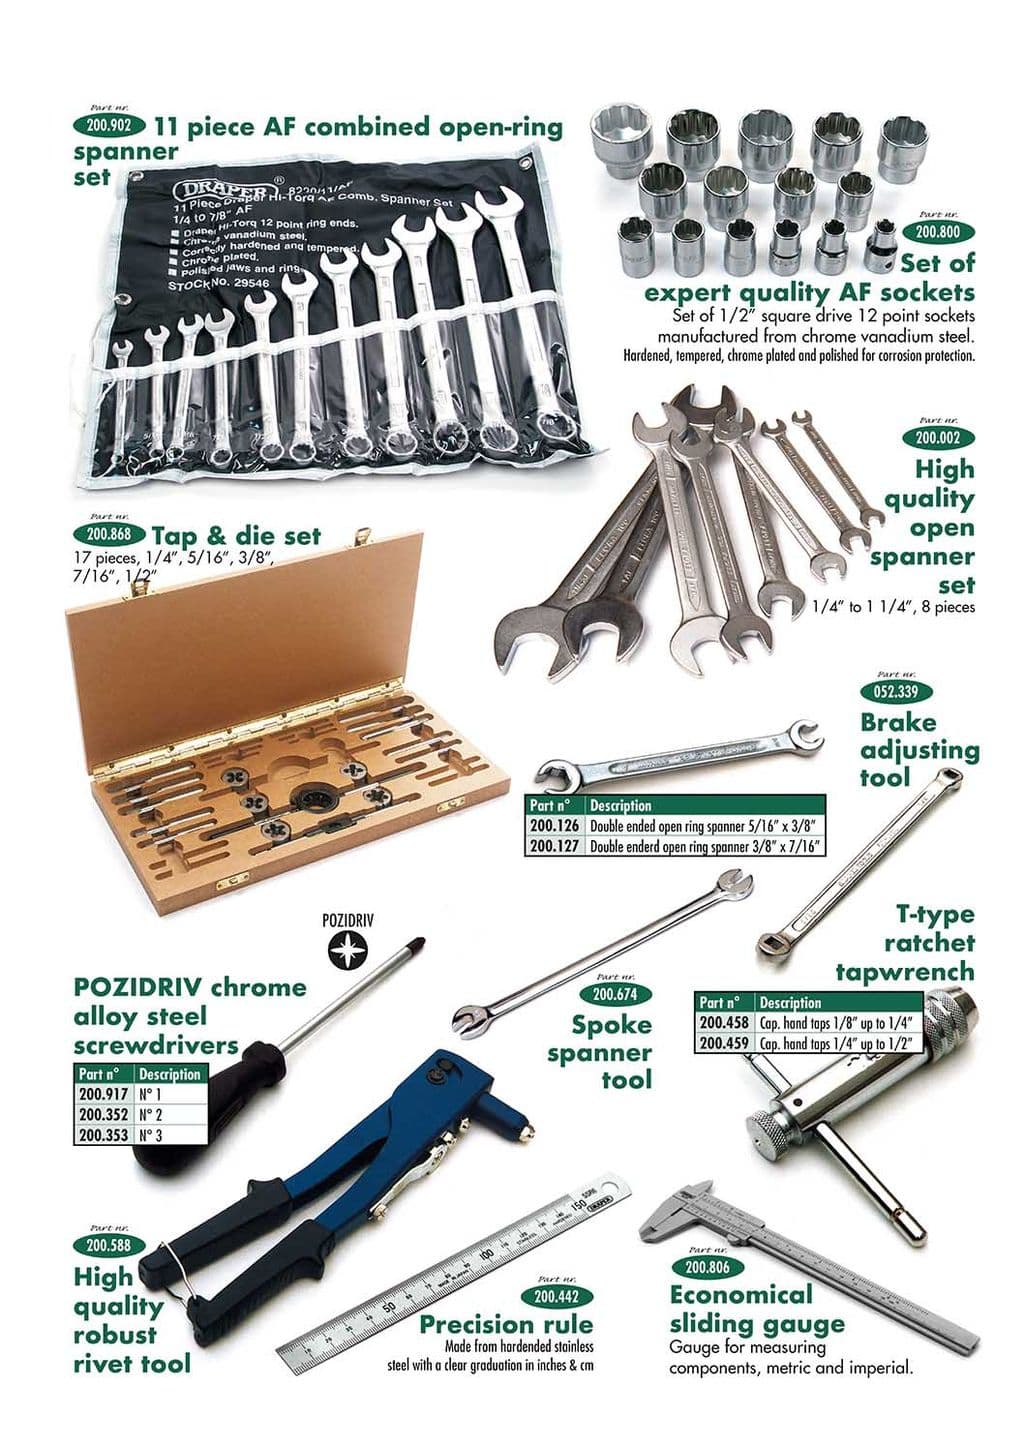 Tools 2 - taller y herramientas - Mantenimiento y almacenamiento - Triumph TR5-250-6 1967-'76 - Tools 2 - 1